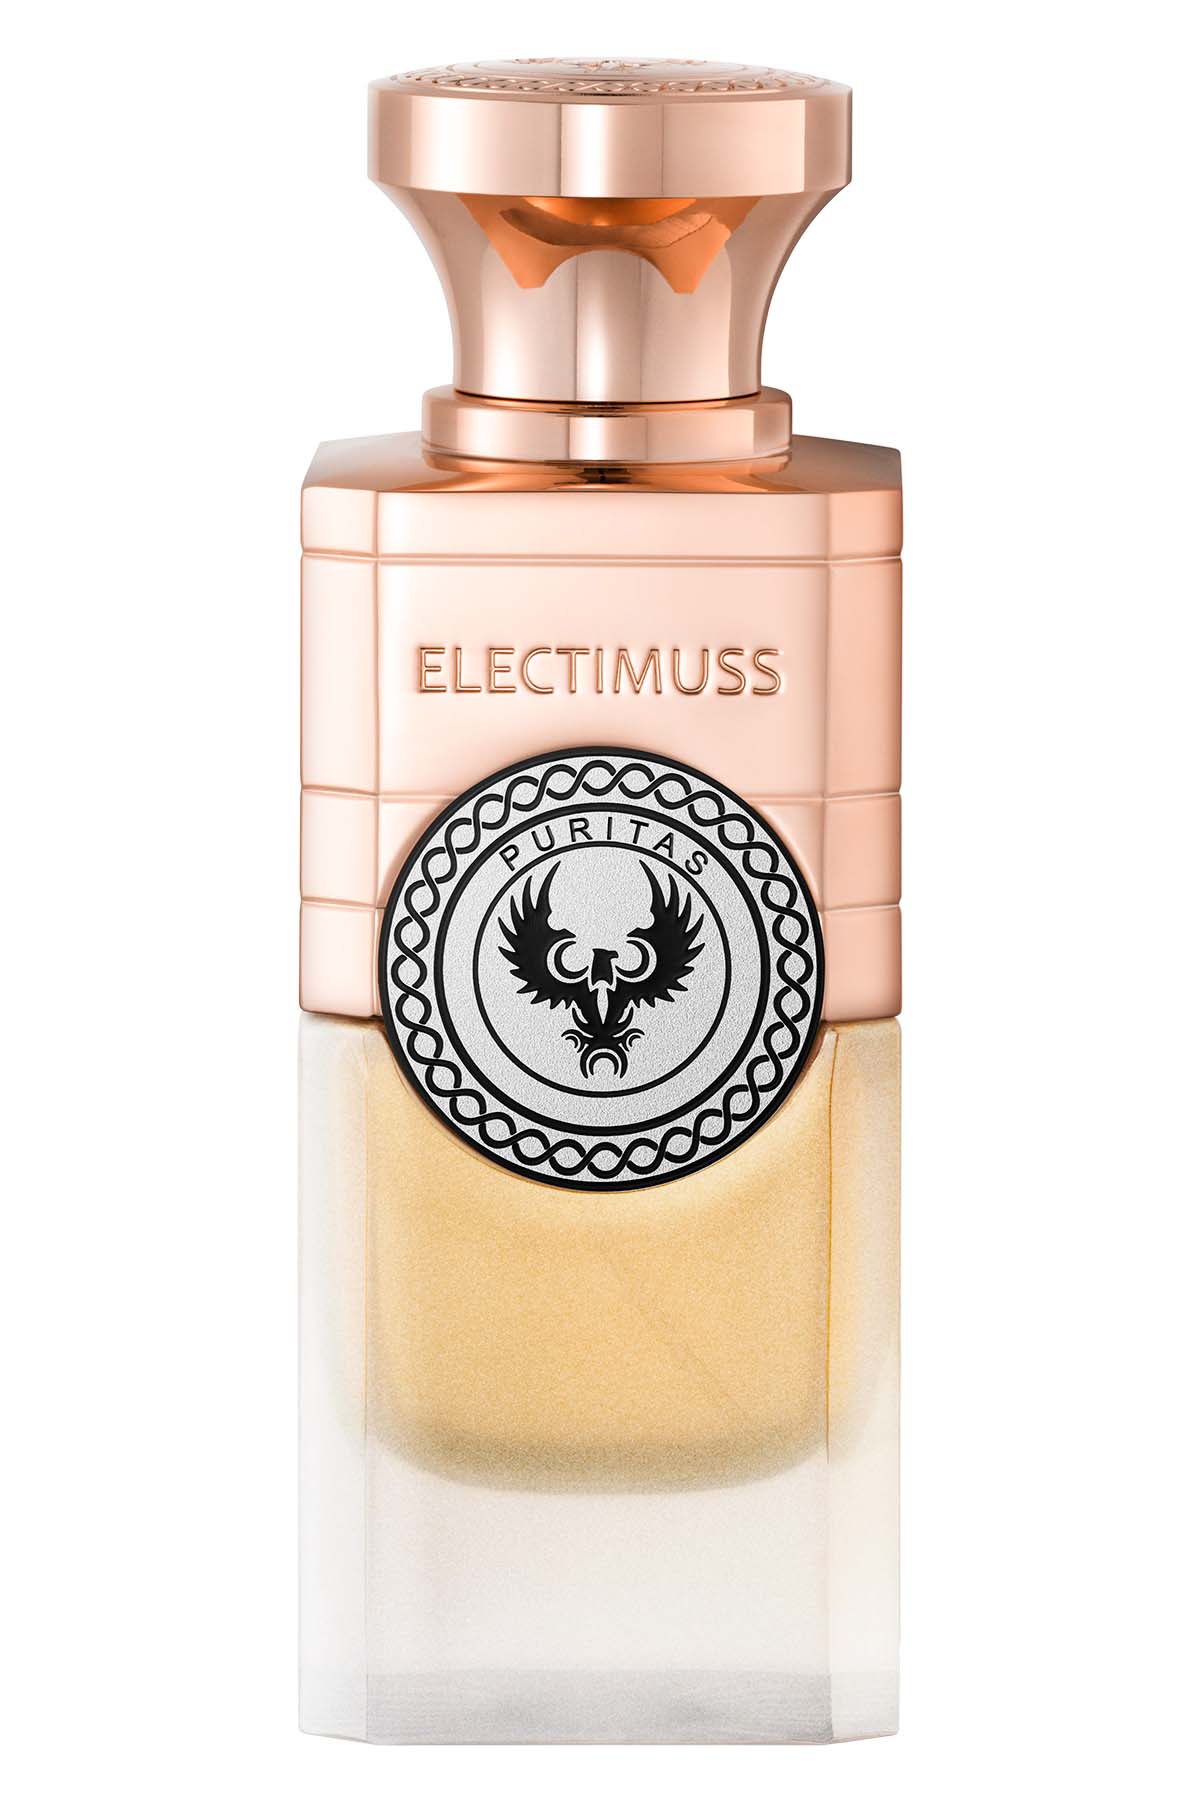 Electimuss Puritas Extrait de Parfum